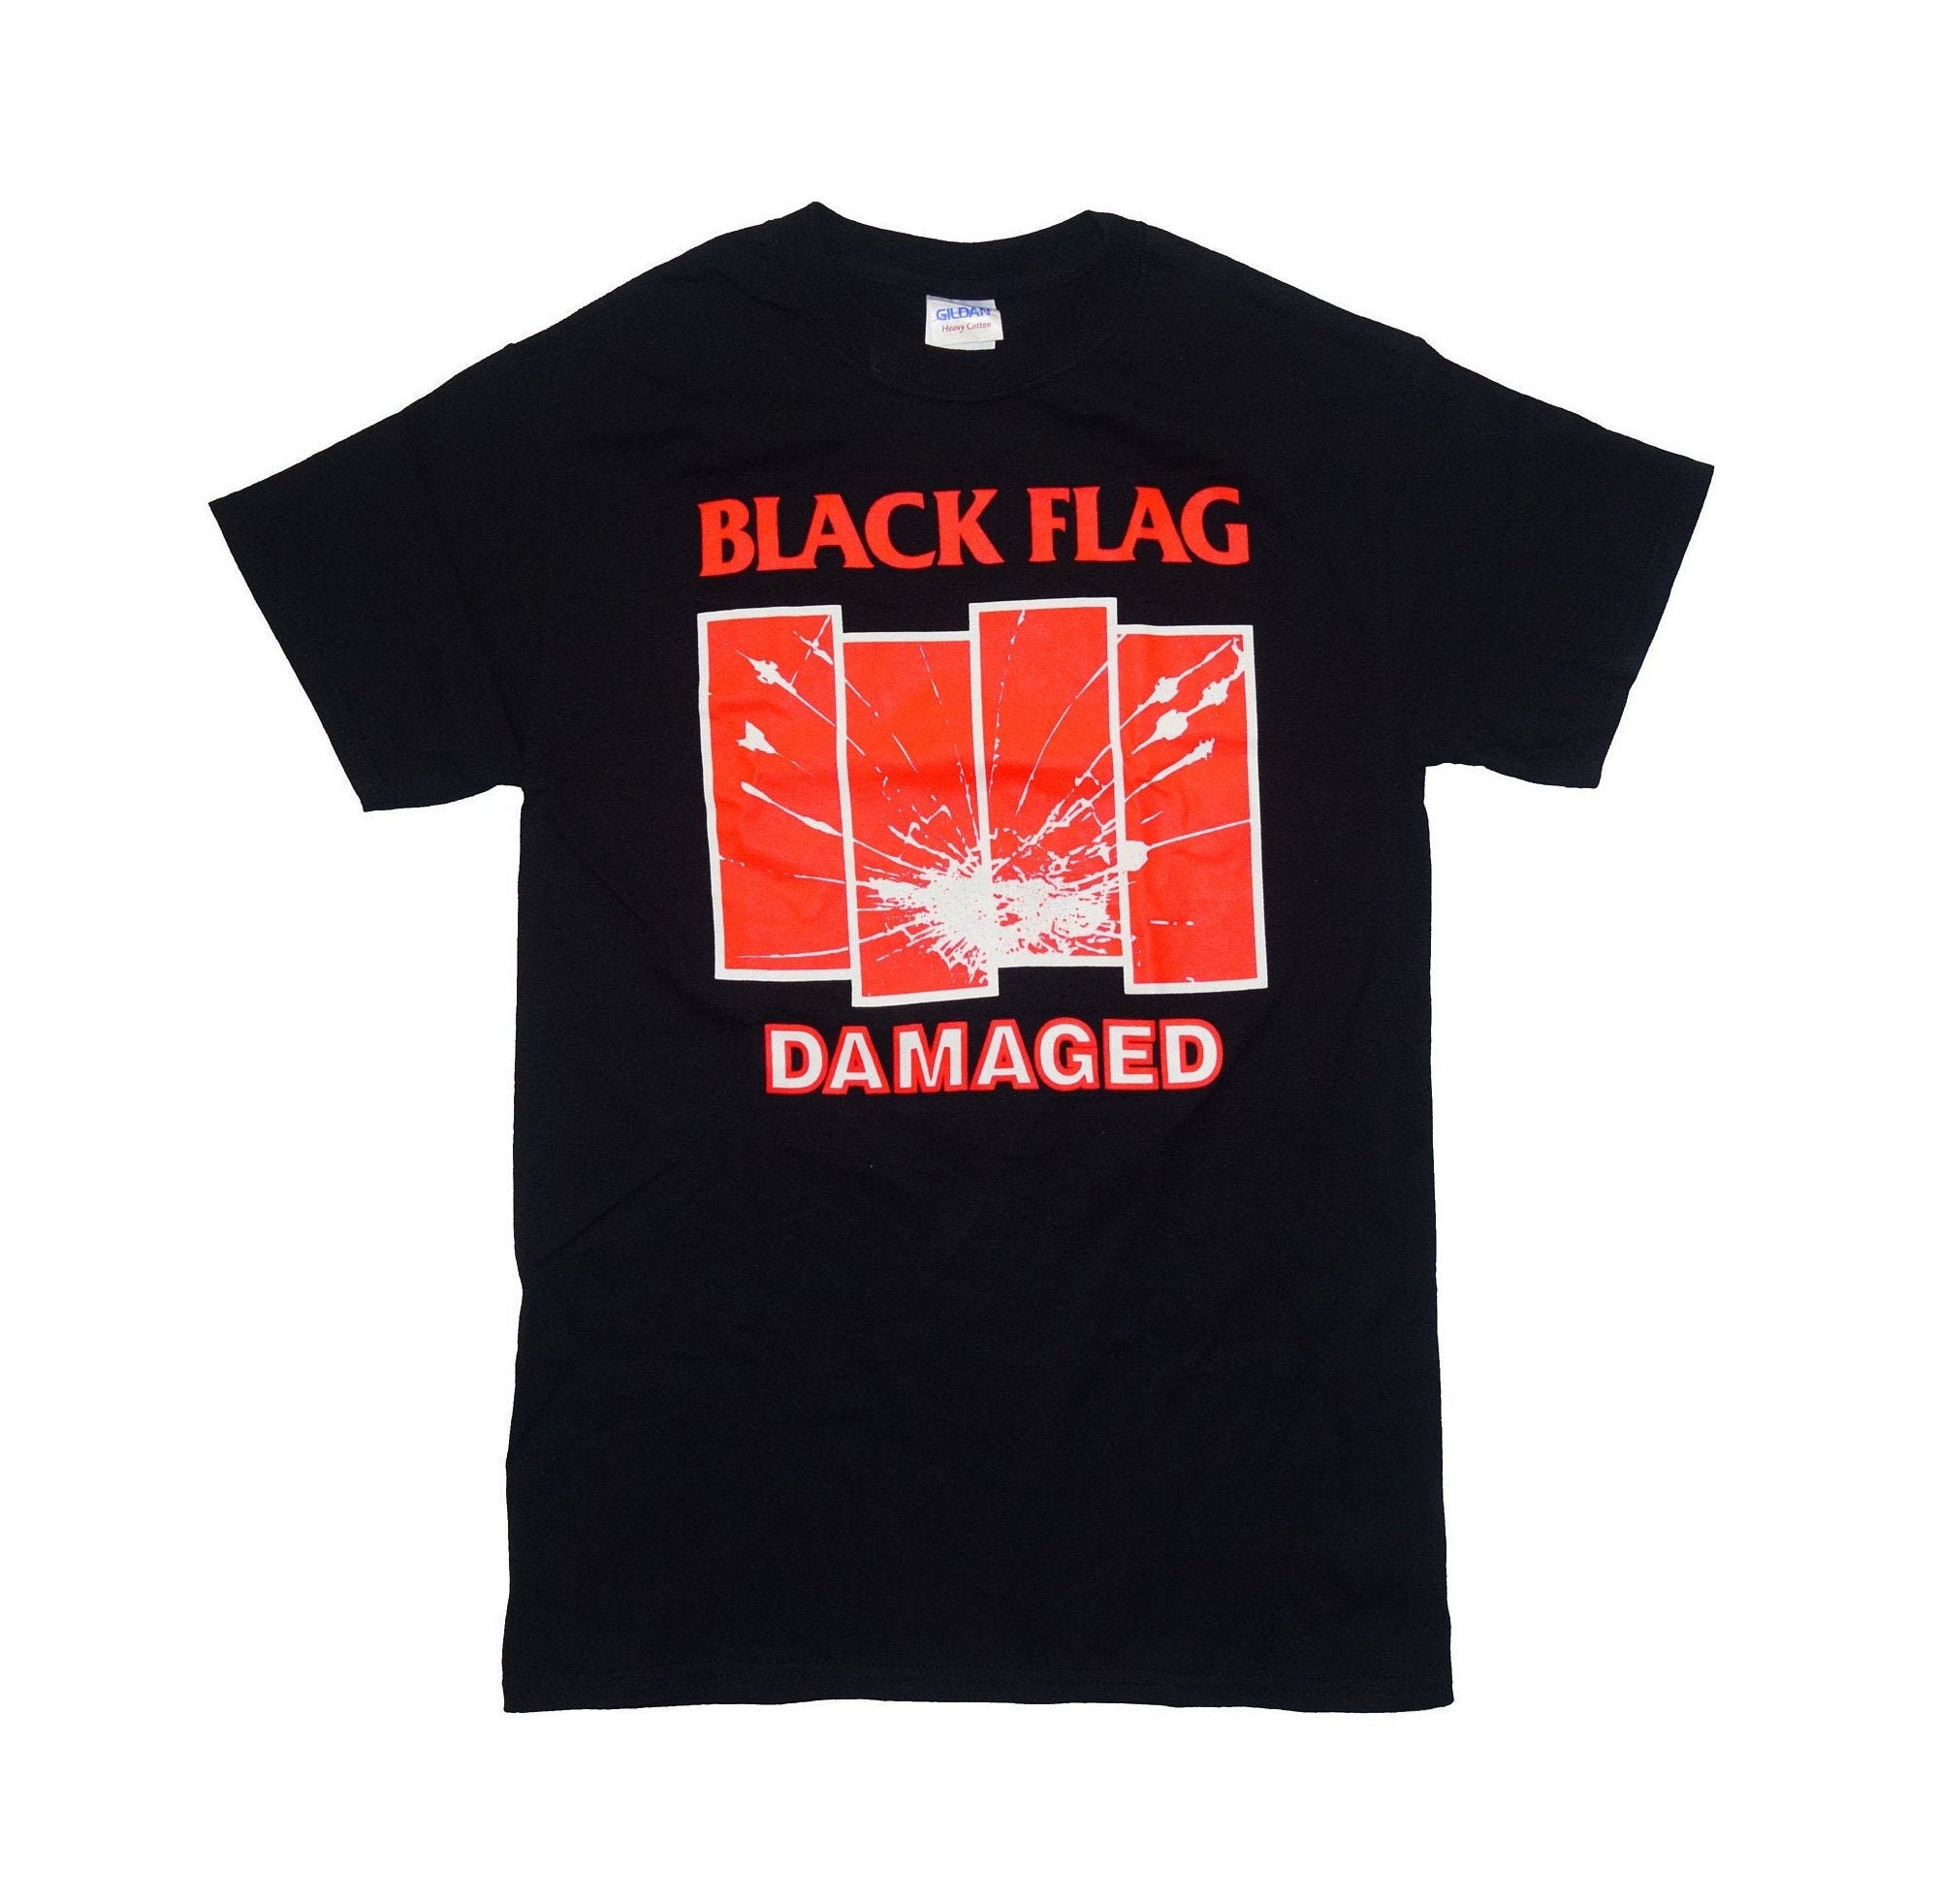 Black Flag Damaged Shirt Fully Licensed Punk Rock